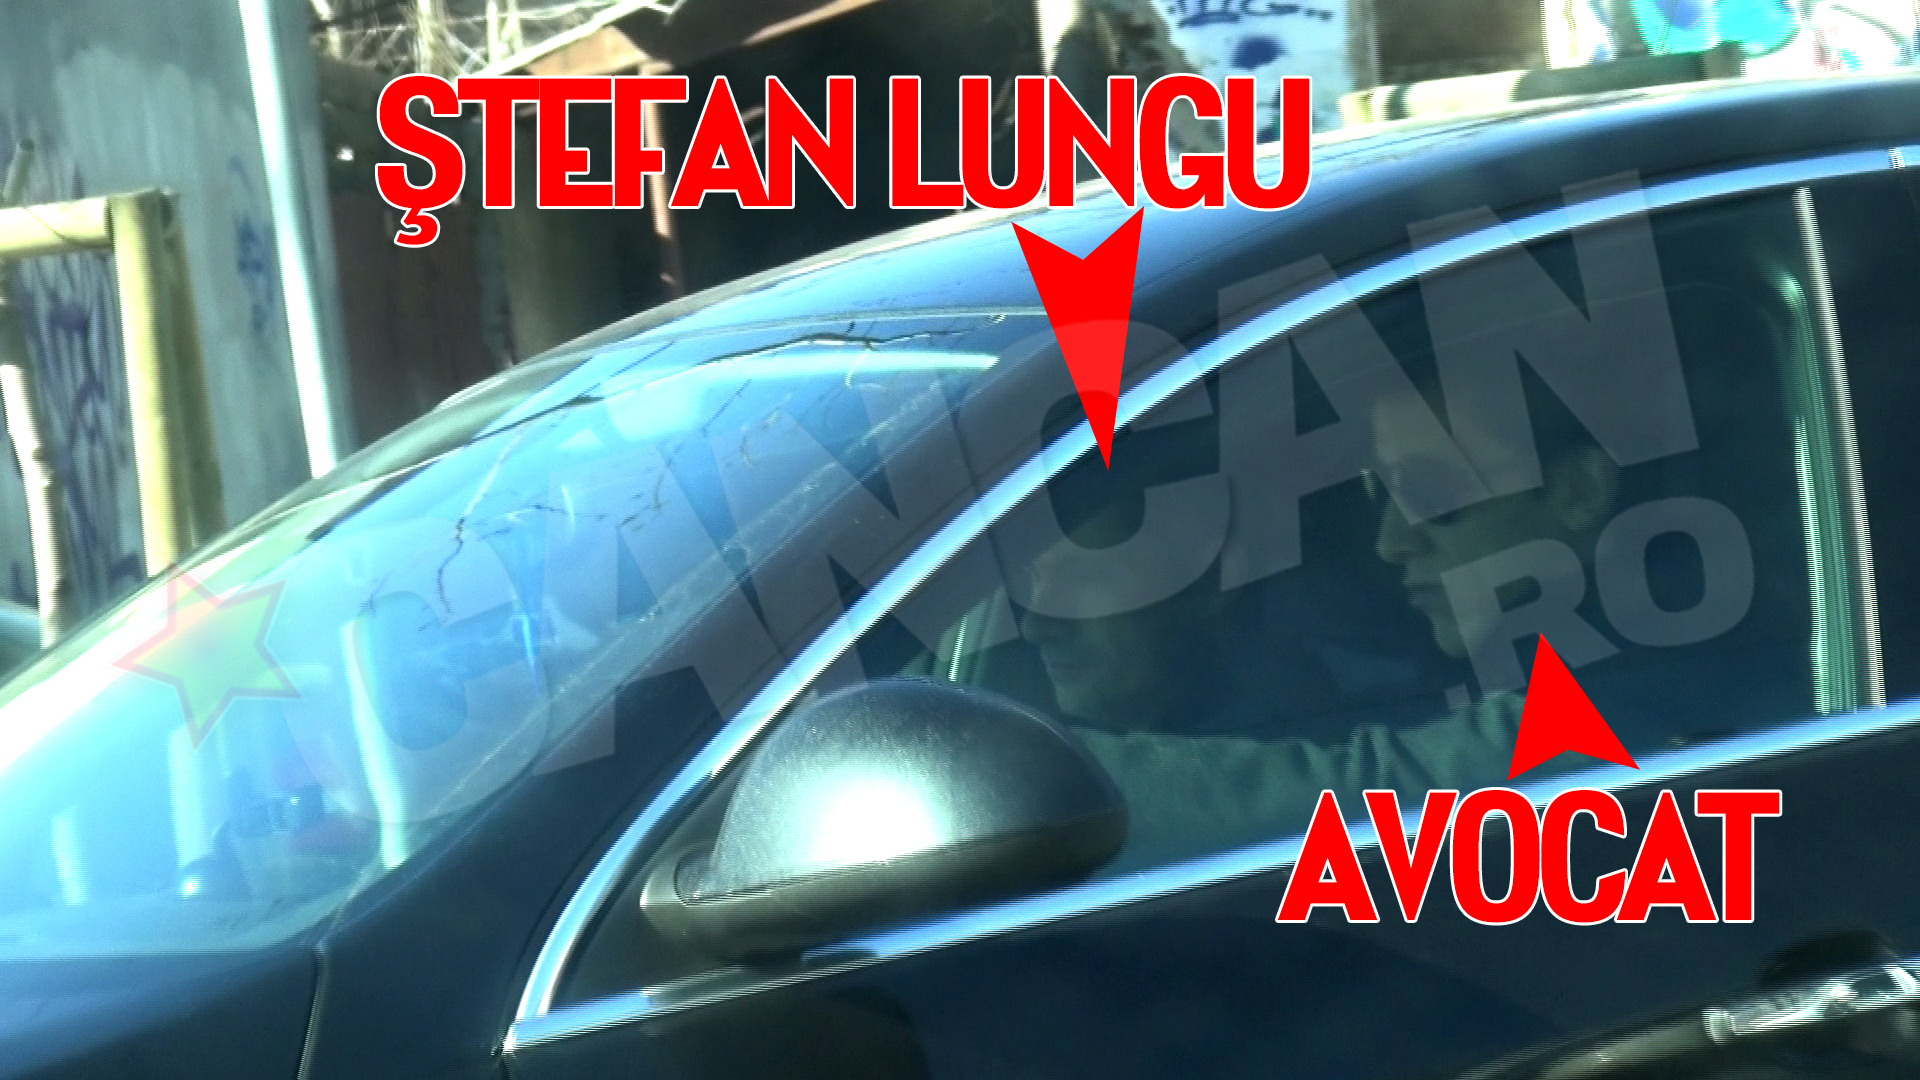 Stefan Lungu pleaca de acasa impreuna cu avocatul lui